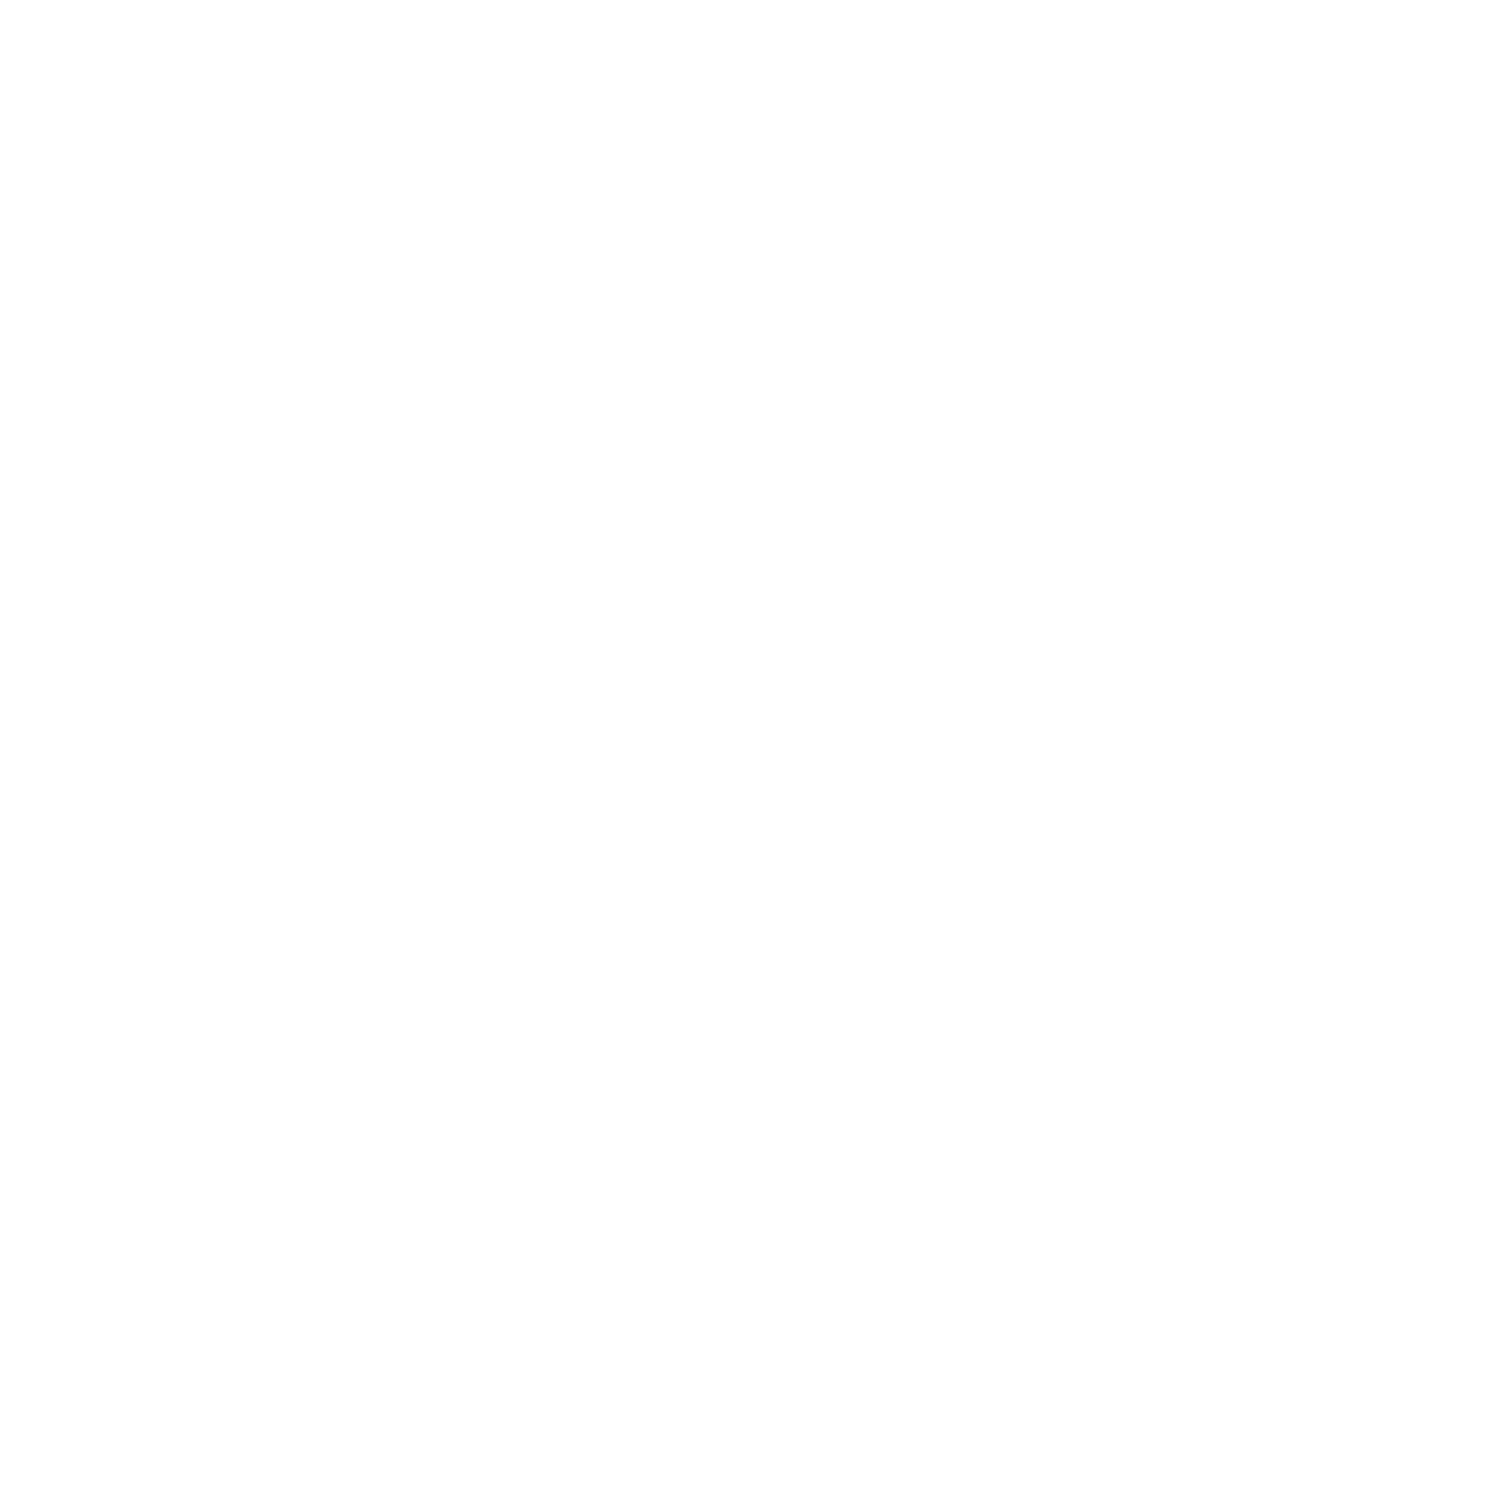 TeamViewer logo for dark backgrounds (transparent PNG)